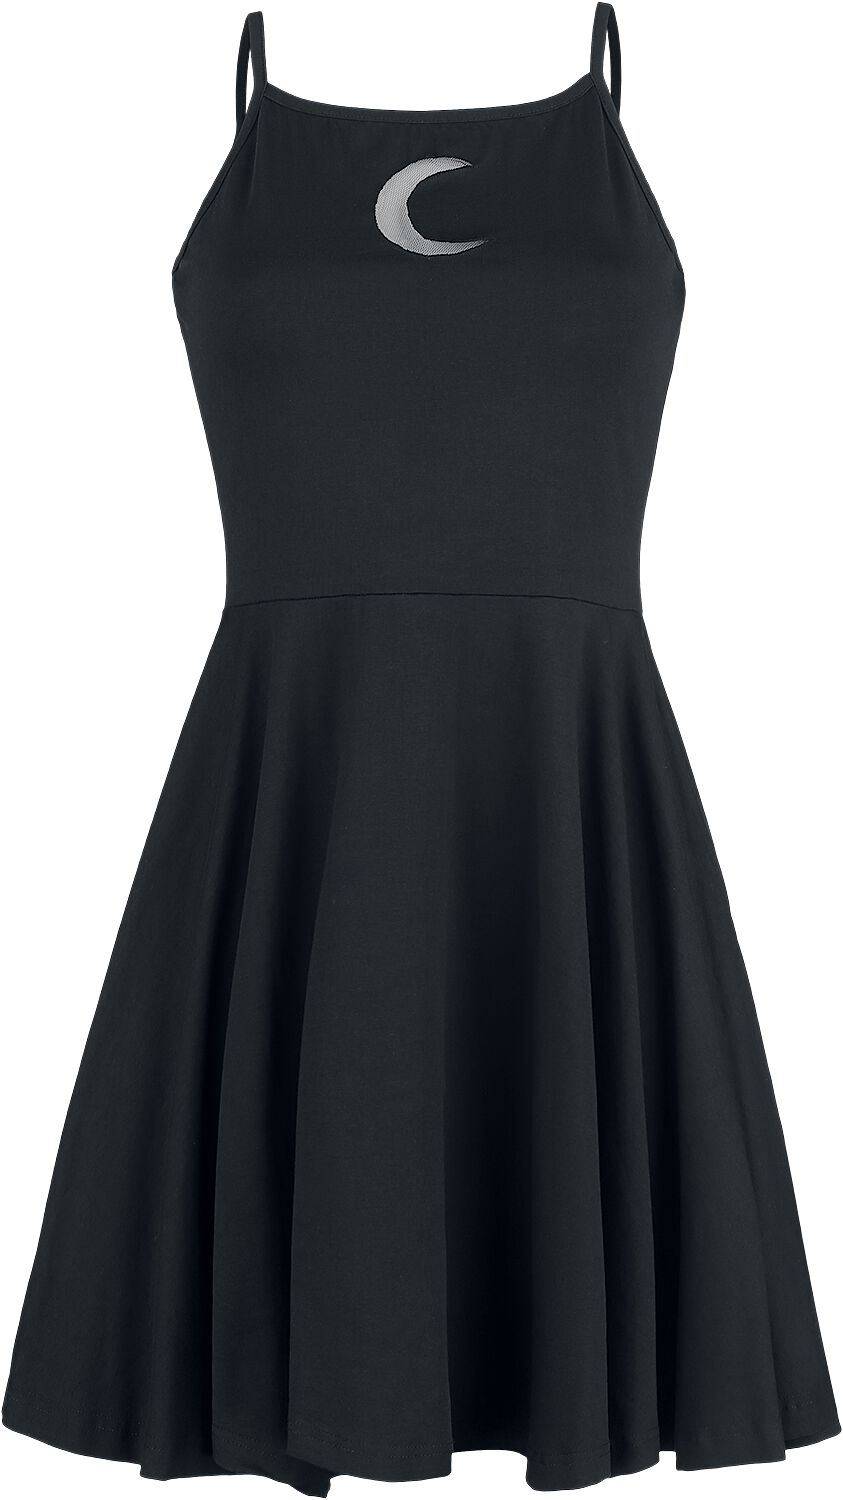 Heartless - Gothic Kurzes Kleid - Zaylee Dress - XS bis XL - für Damen - Größe L - schwarz